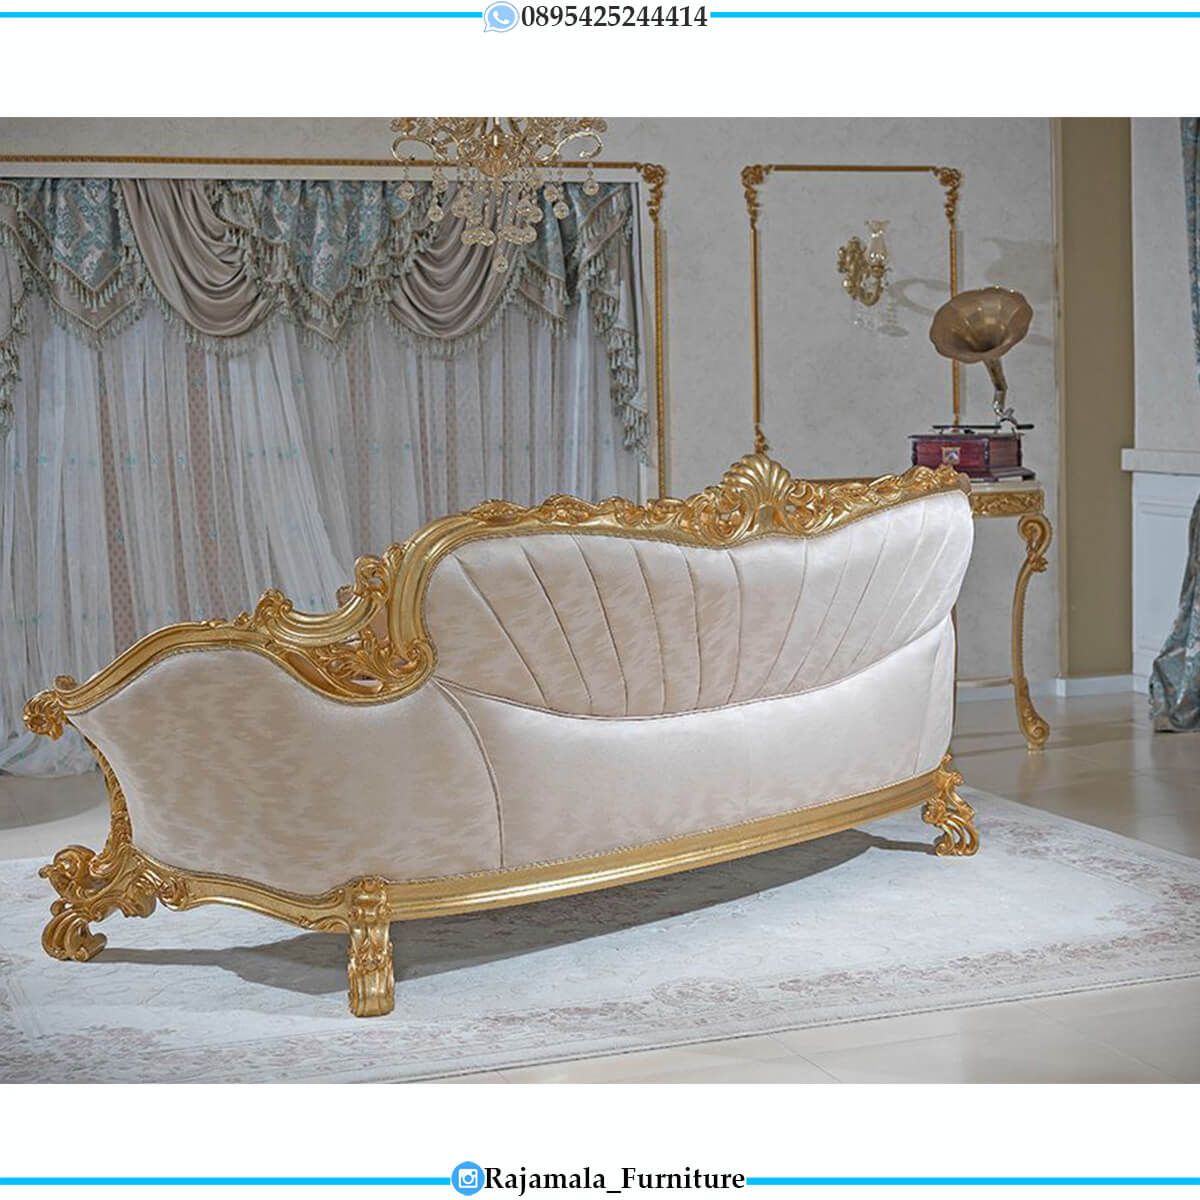 Sofa Tamu Mewah Ukiran Jepara Luxury Golden Duco Color RM-0752